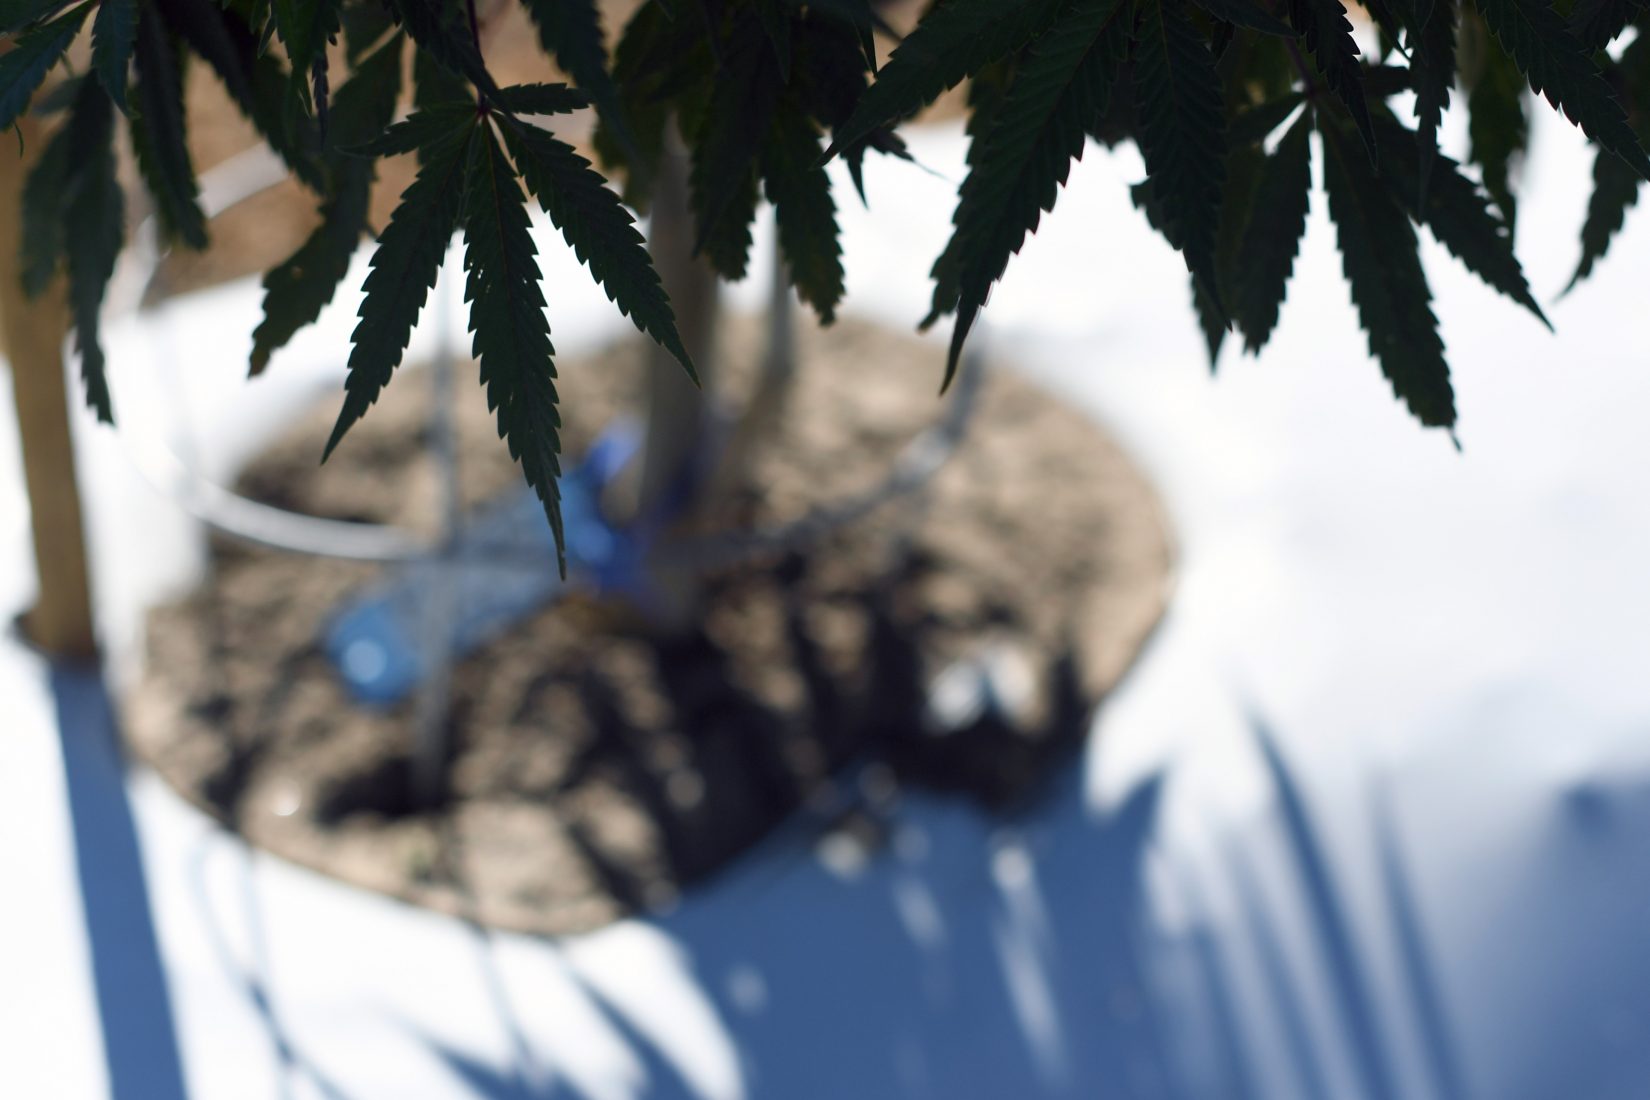 Outdoor marijuana grow in Pueblo County, Colorado